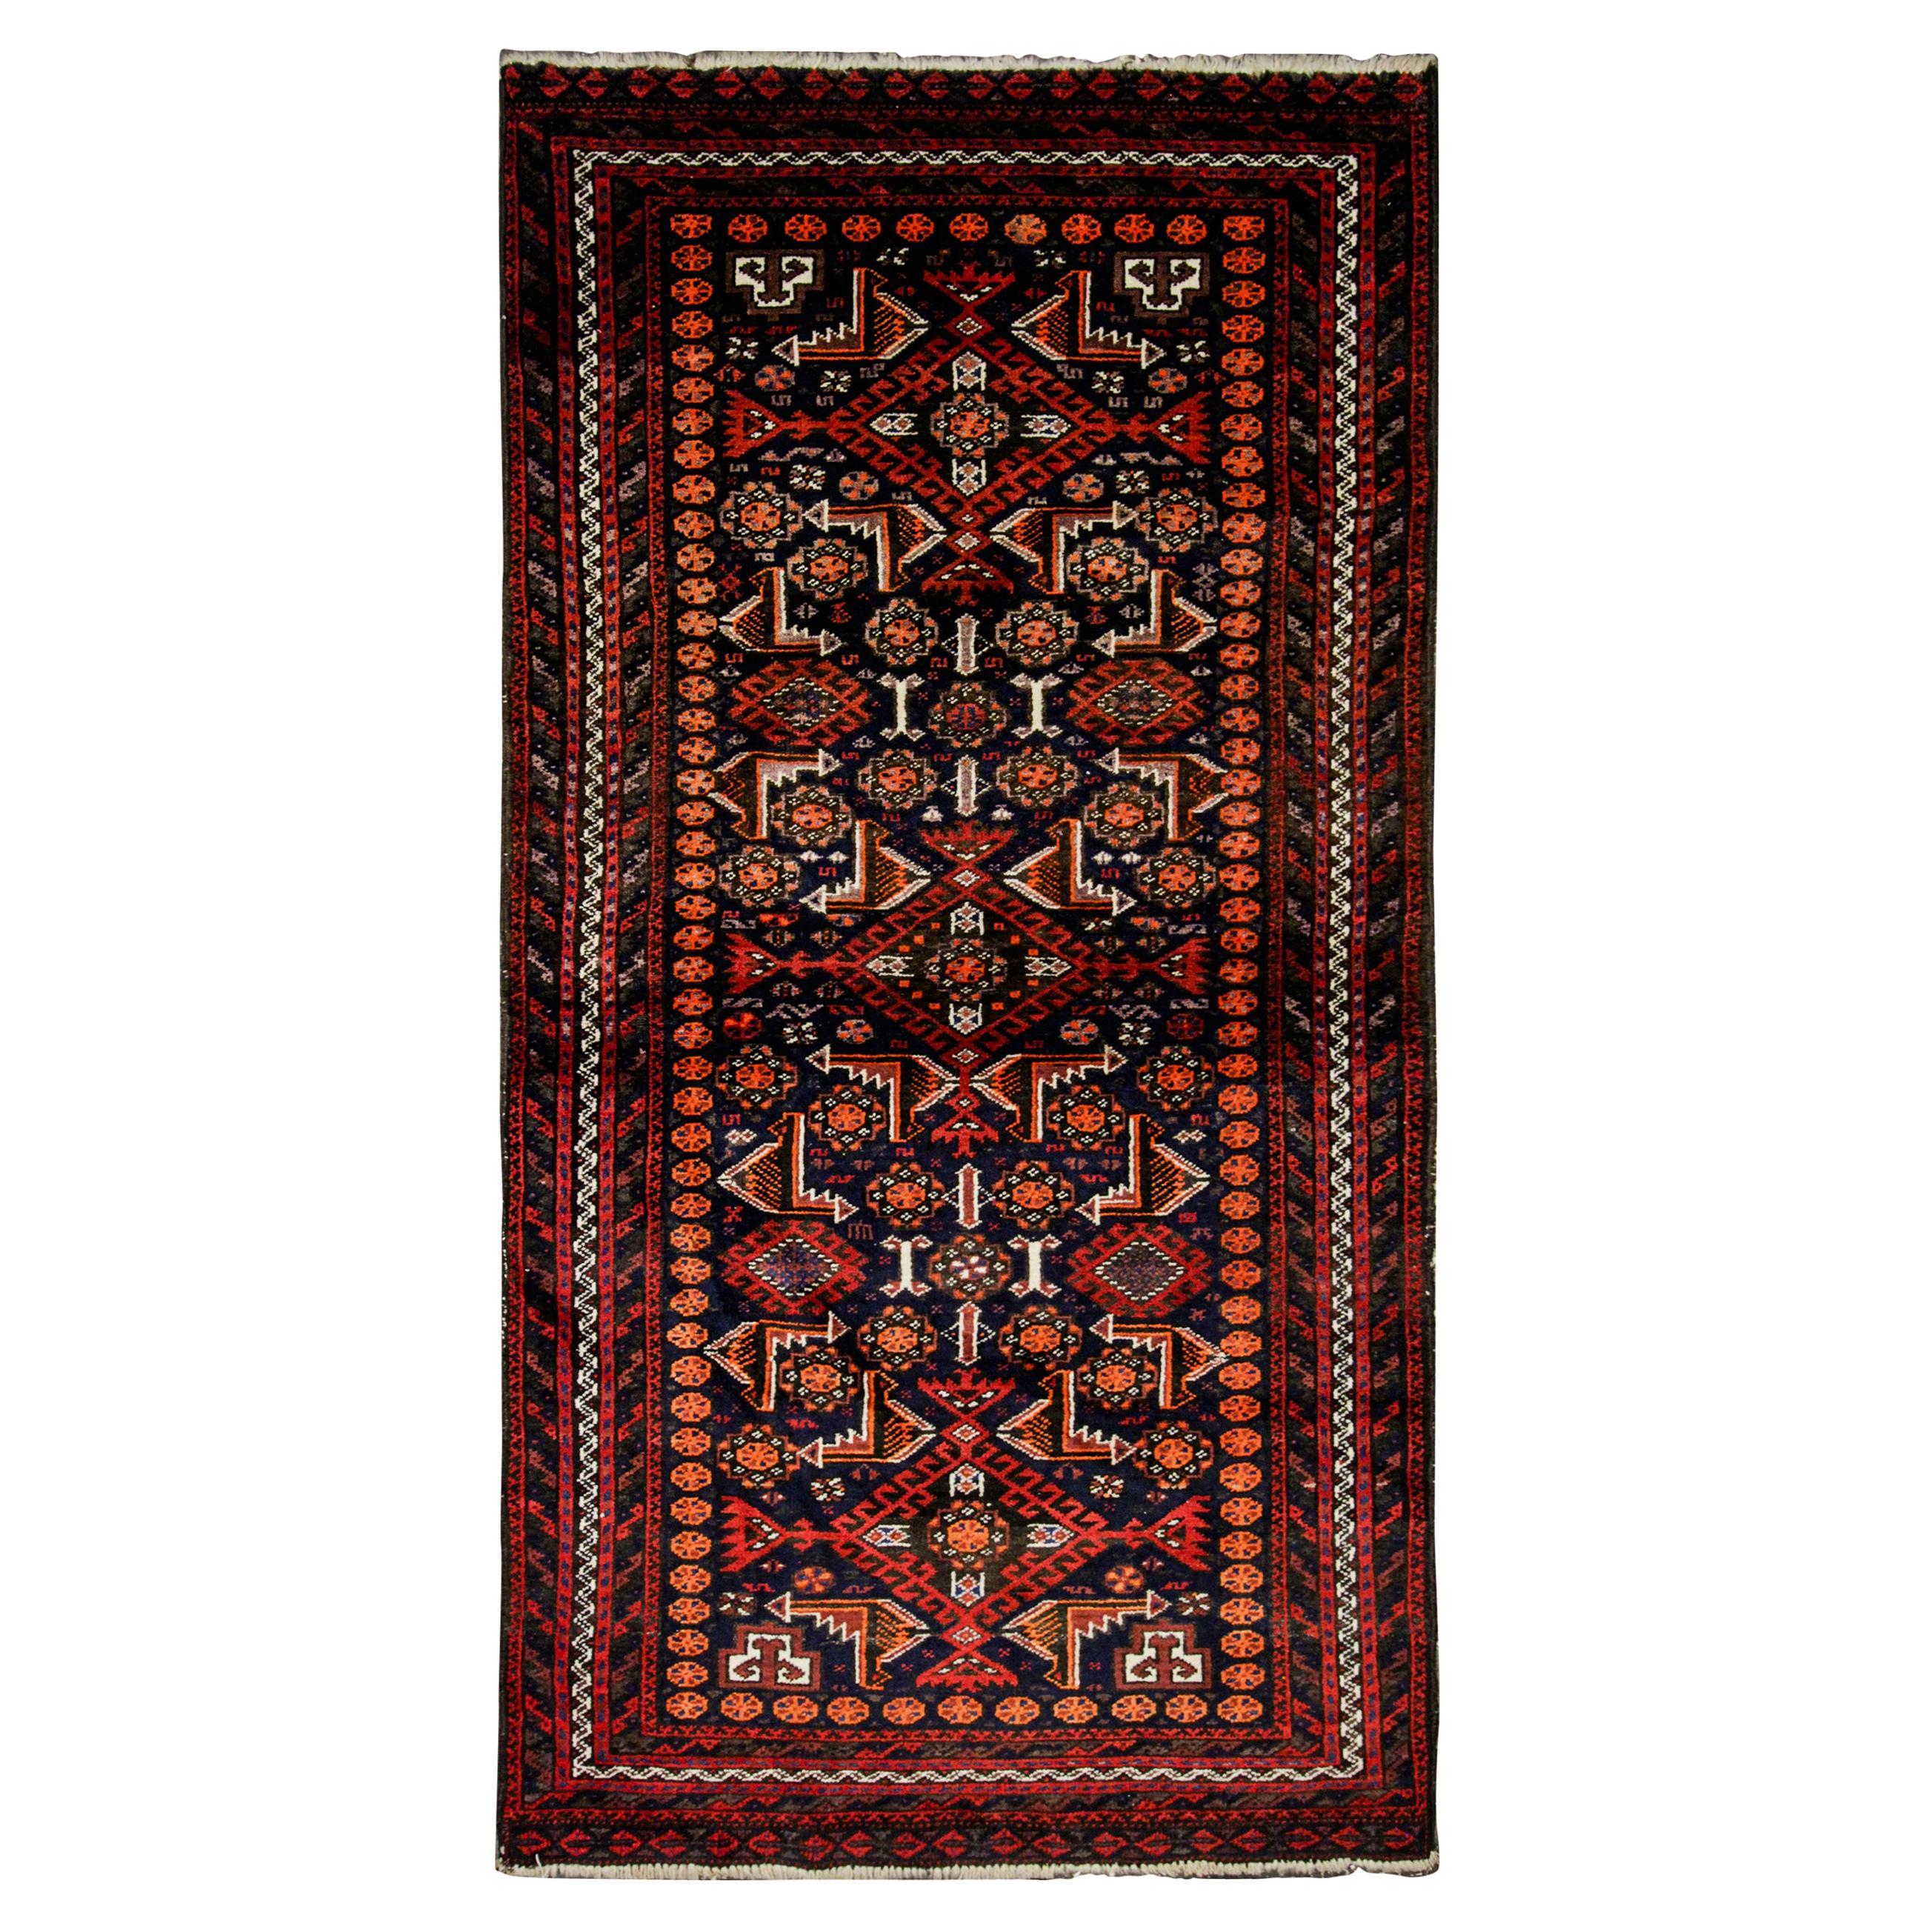 Vintage Tribal Area Rug, Handwoven Afghanistan Red Wool Carpet